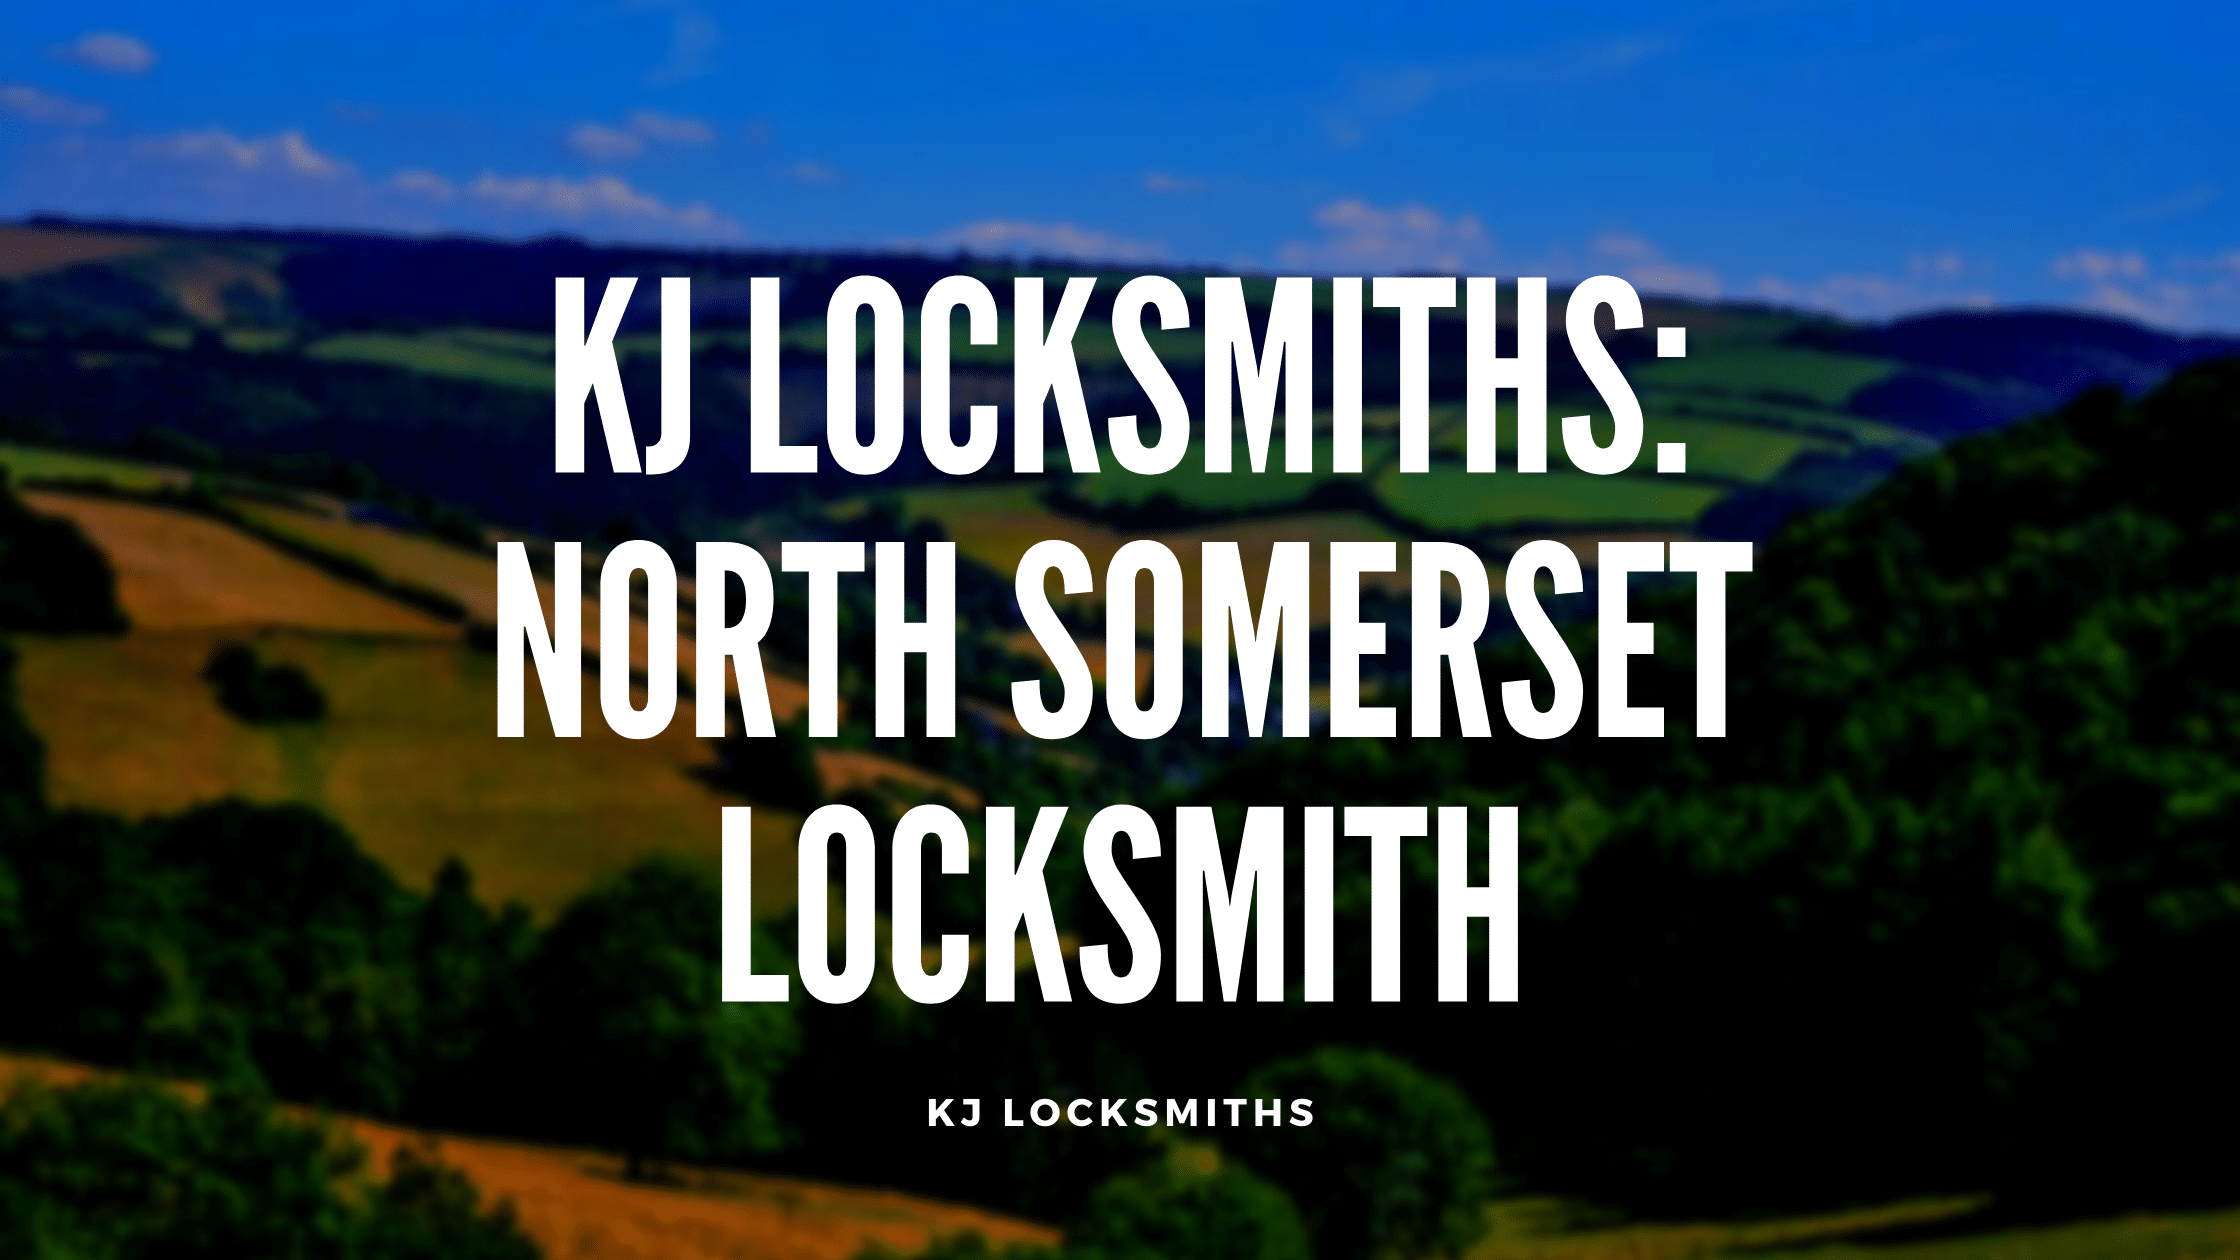 KJ Locksmiths: North Somerset Locksmith